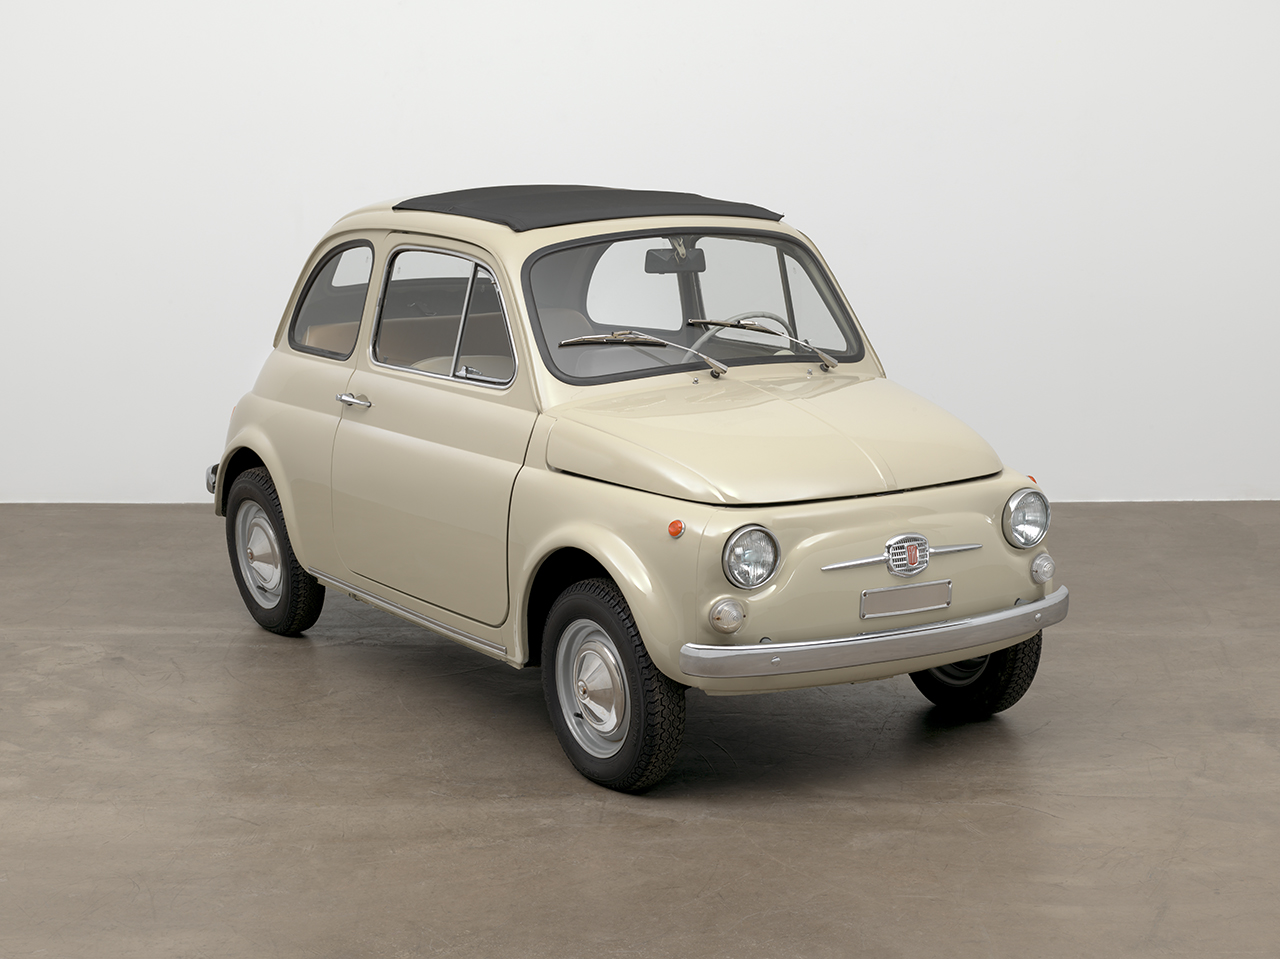 Fiat 500 im Museum of Modern Art aufgenommen